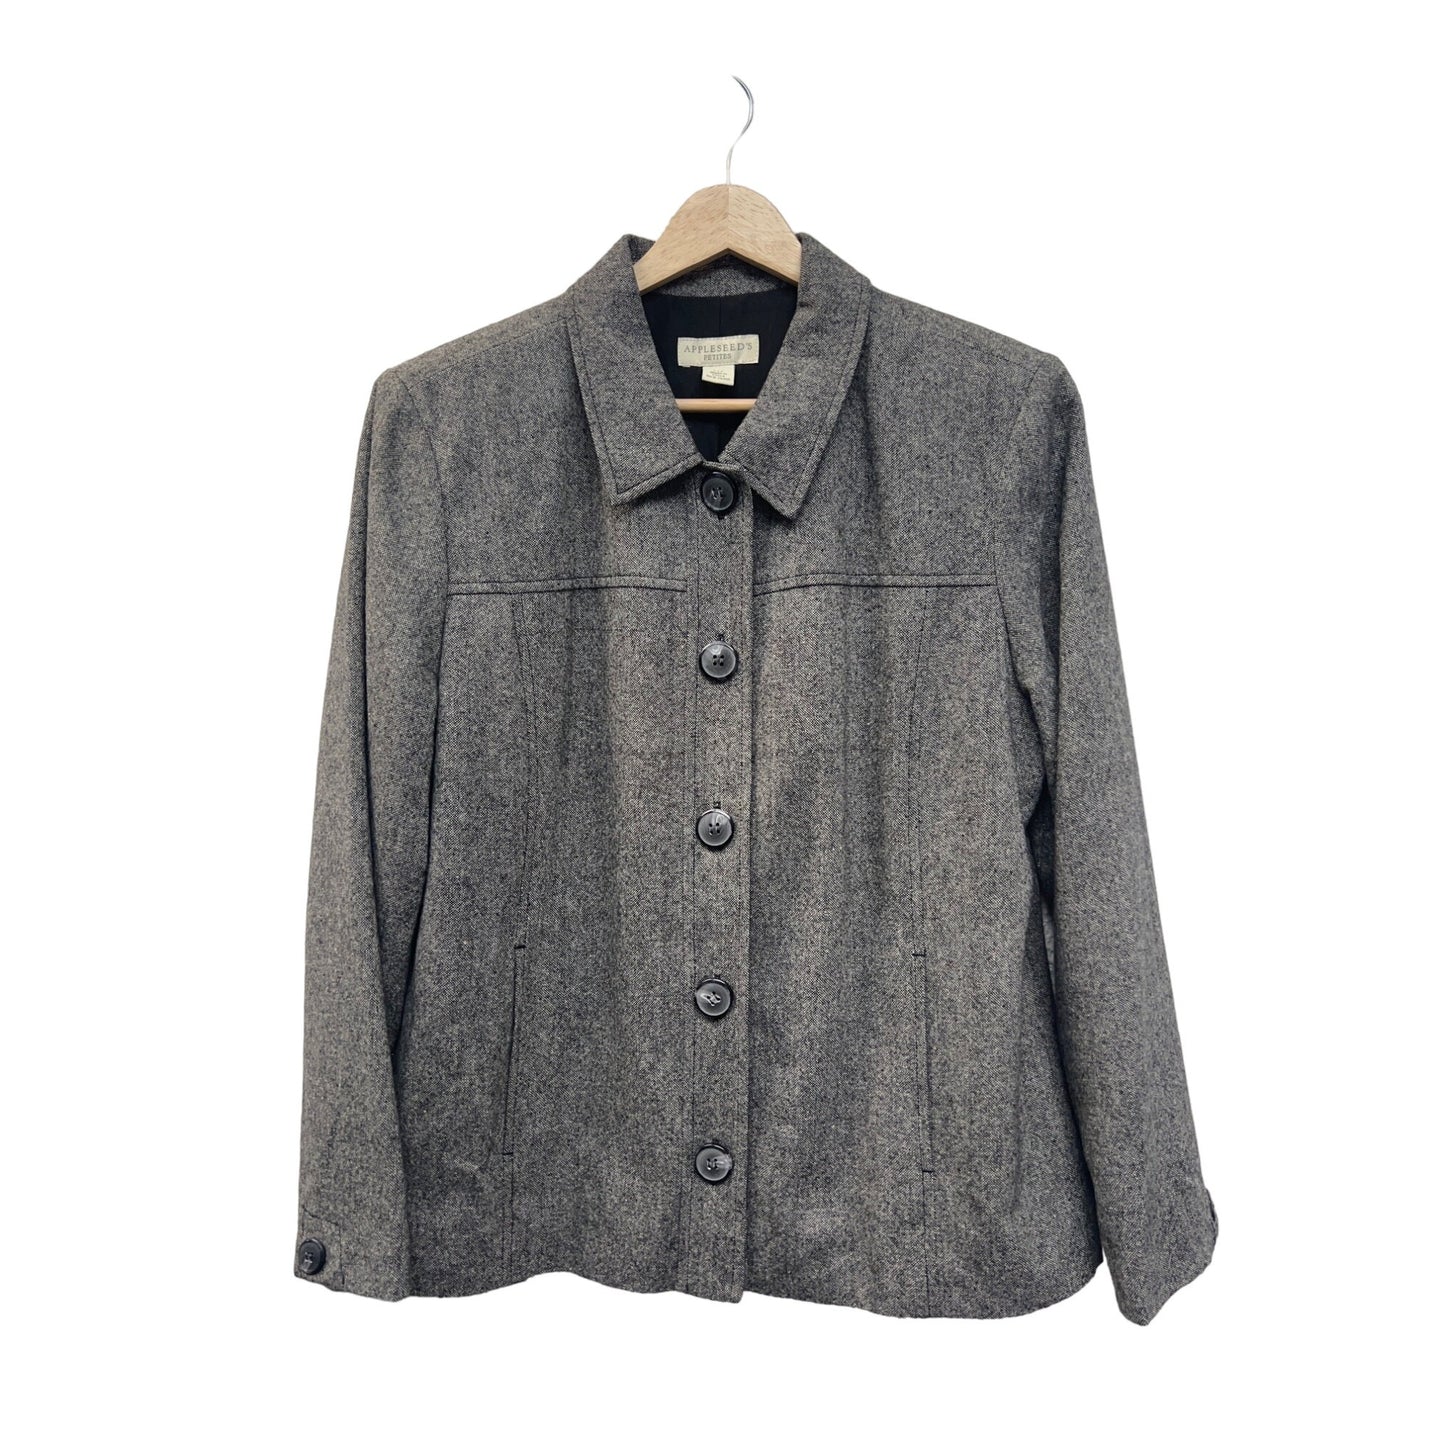 Appleseed's Petites Gray Wool Silk Blend Tweed Blazer Jacket